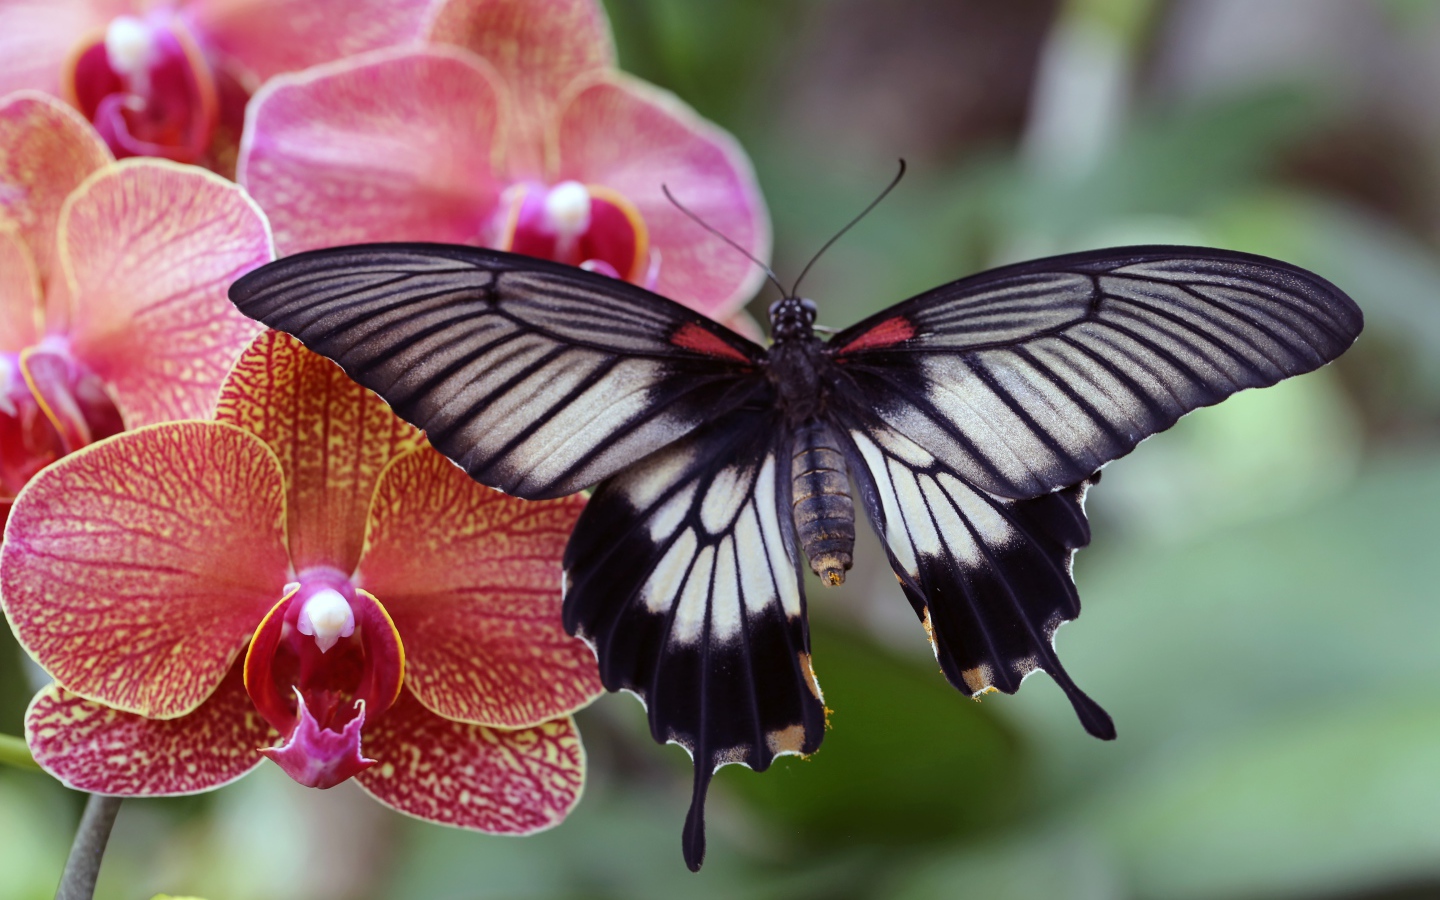 Красивая бабочка сидит на цветке розовой орхидеи